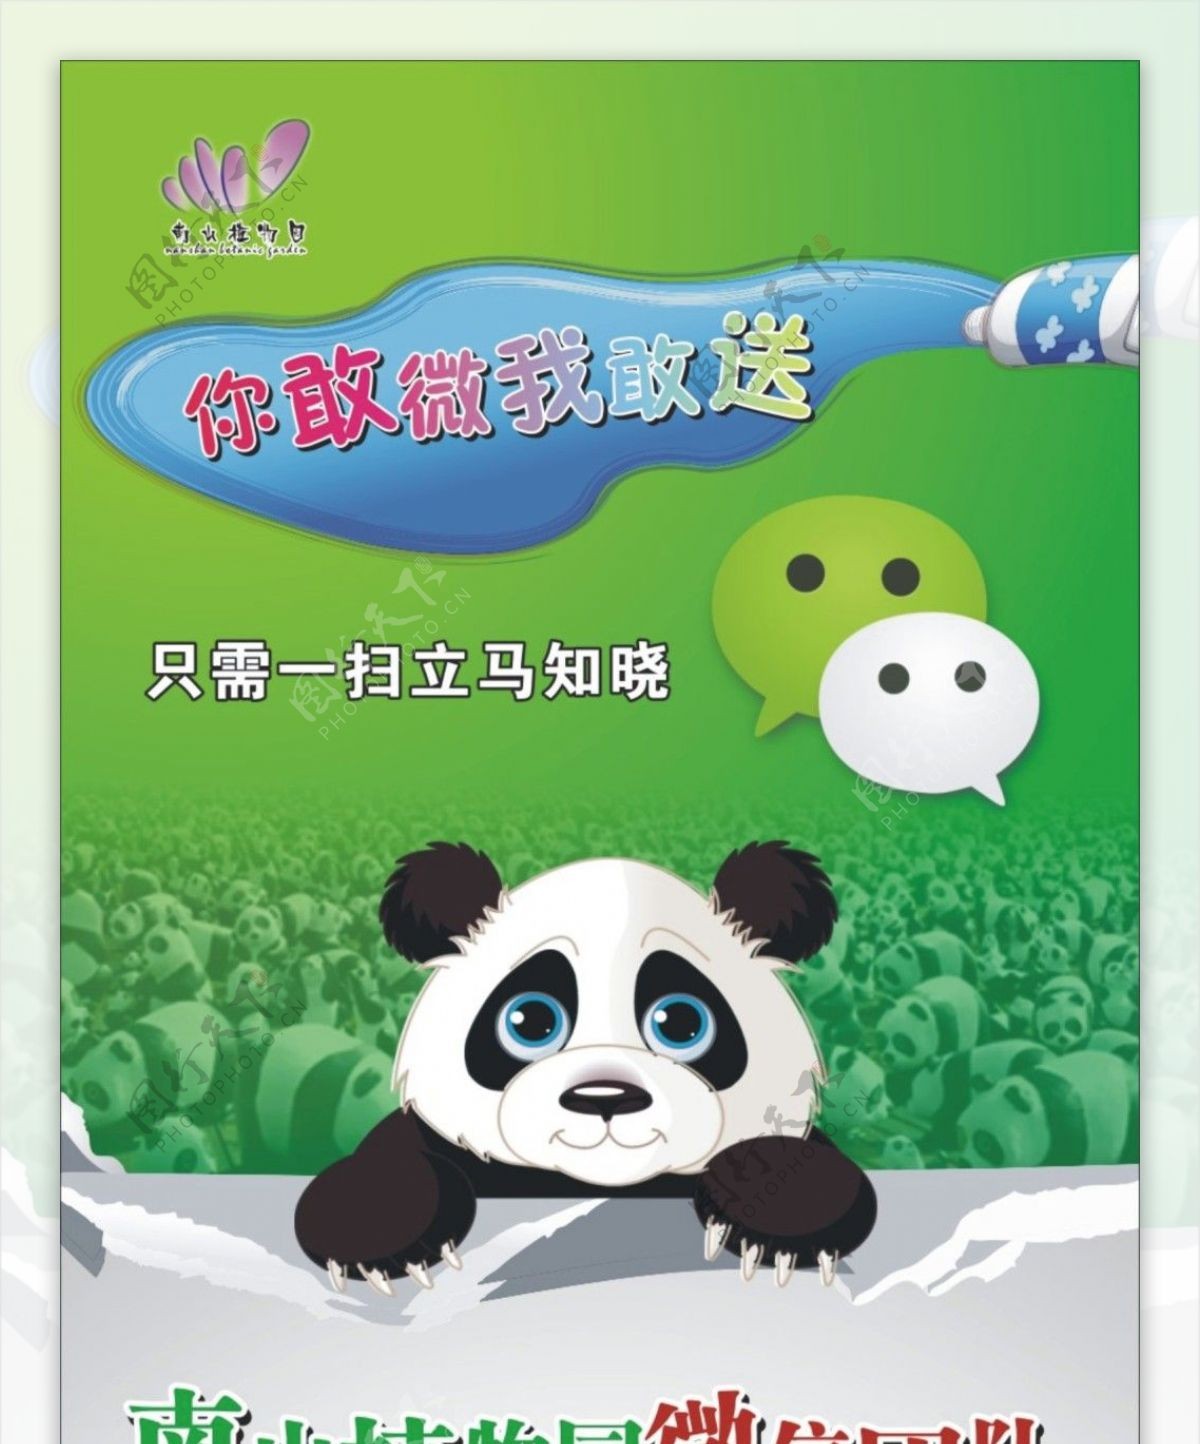 扫微信熊猫海报